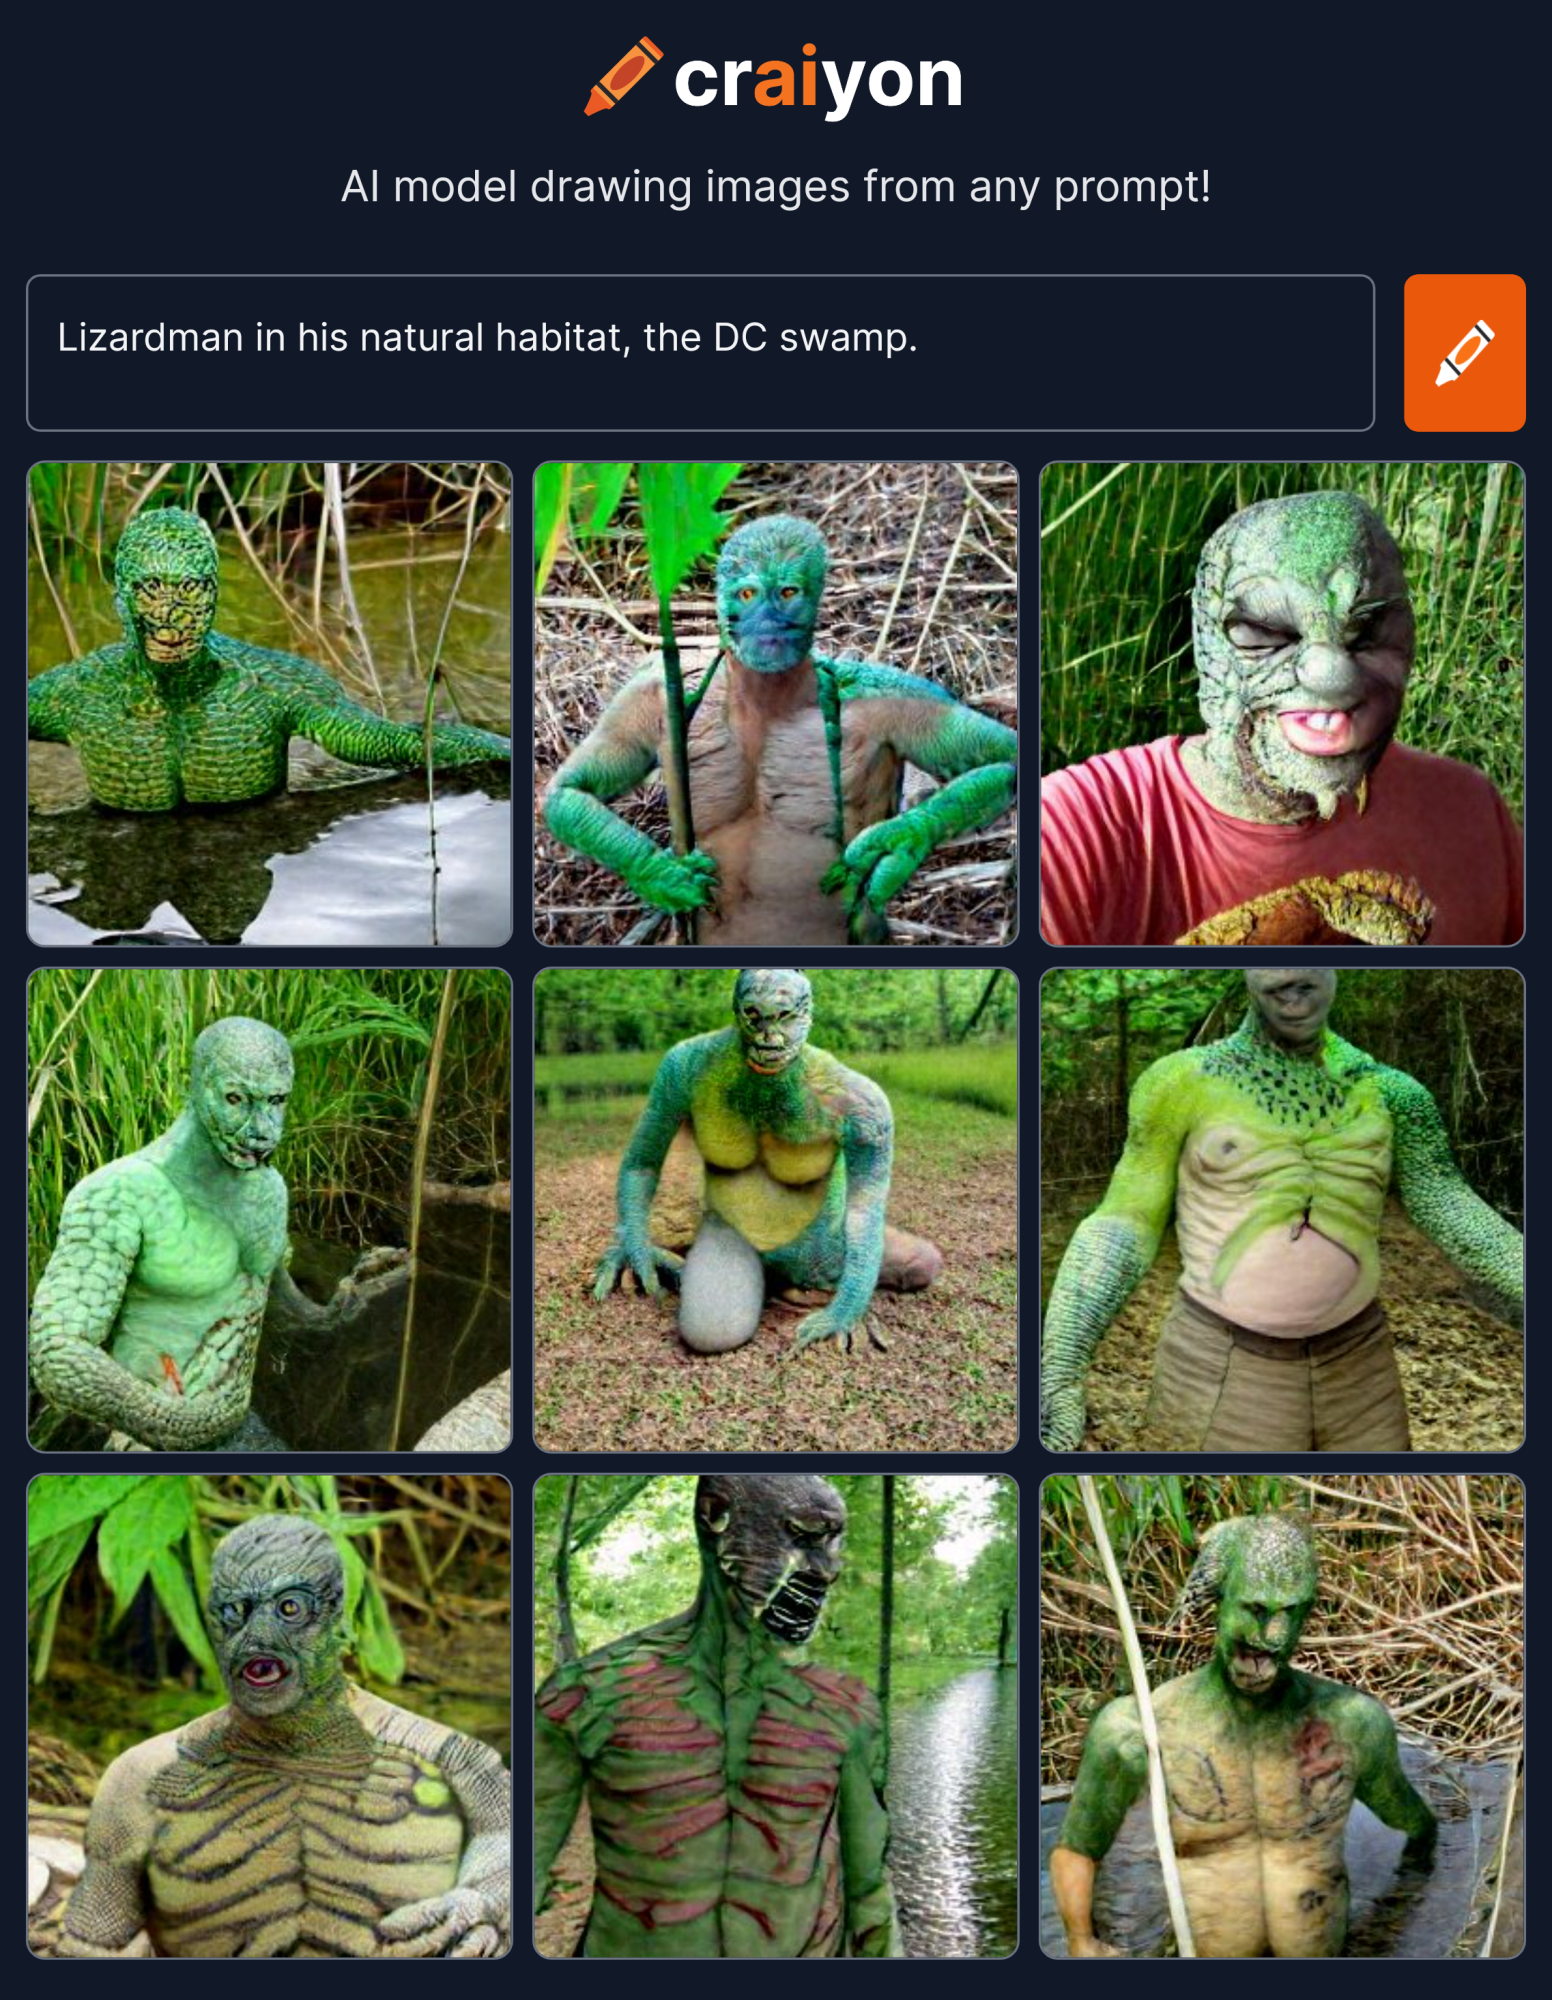 craiyon_010009_Lizardman_in_his_natural_habitat__the_DC_swamp_.png